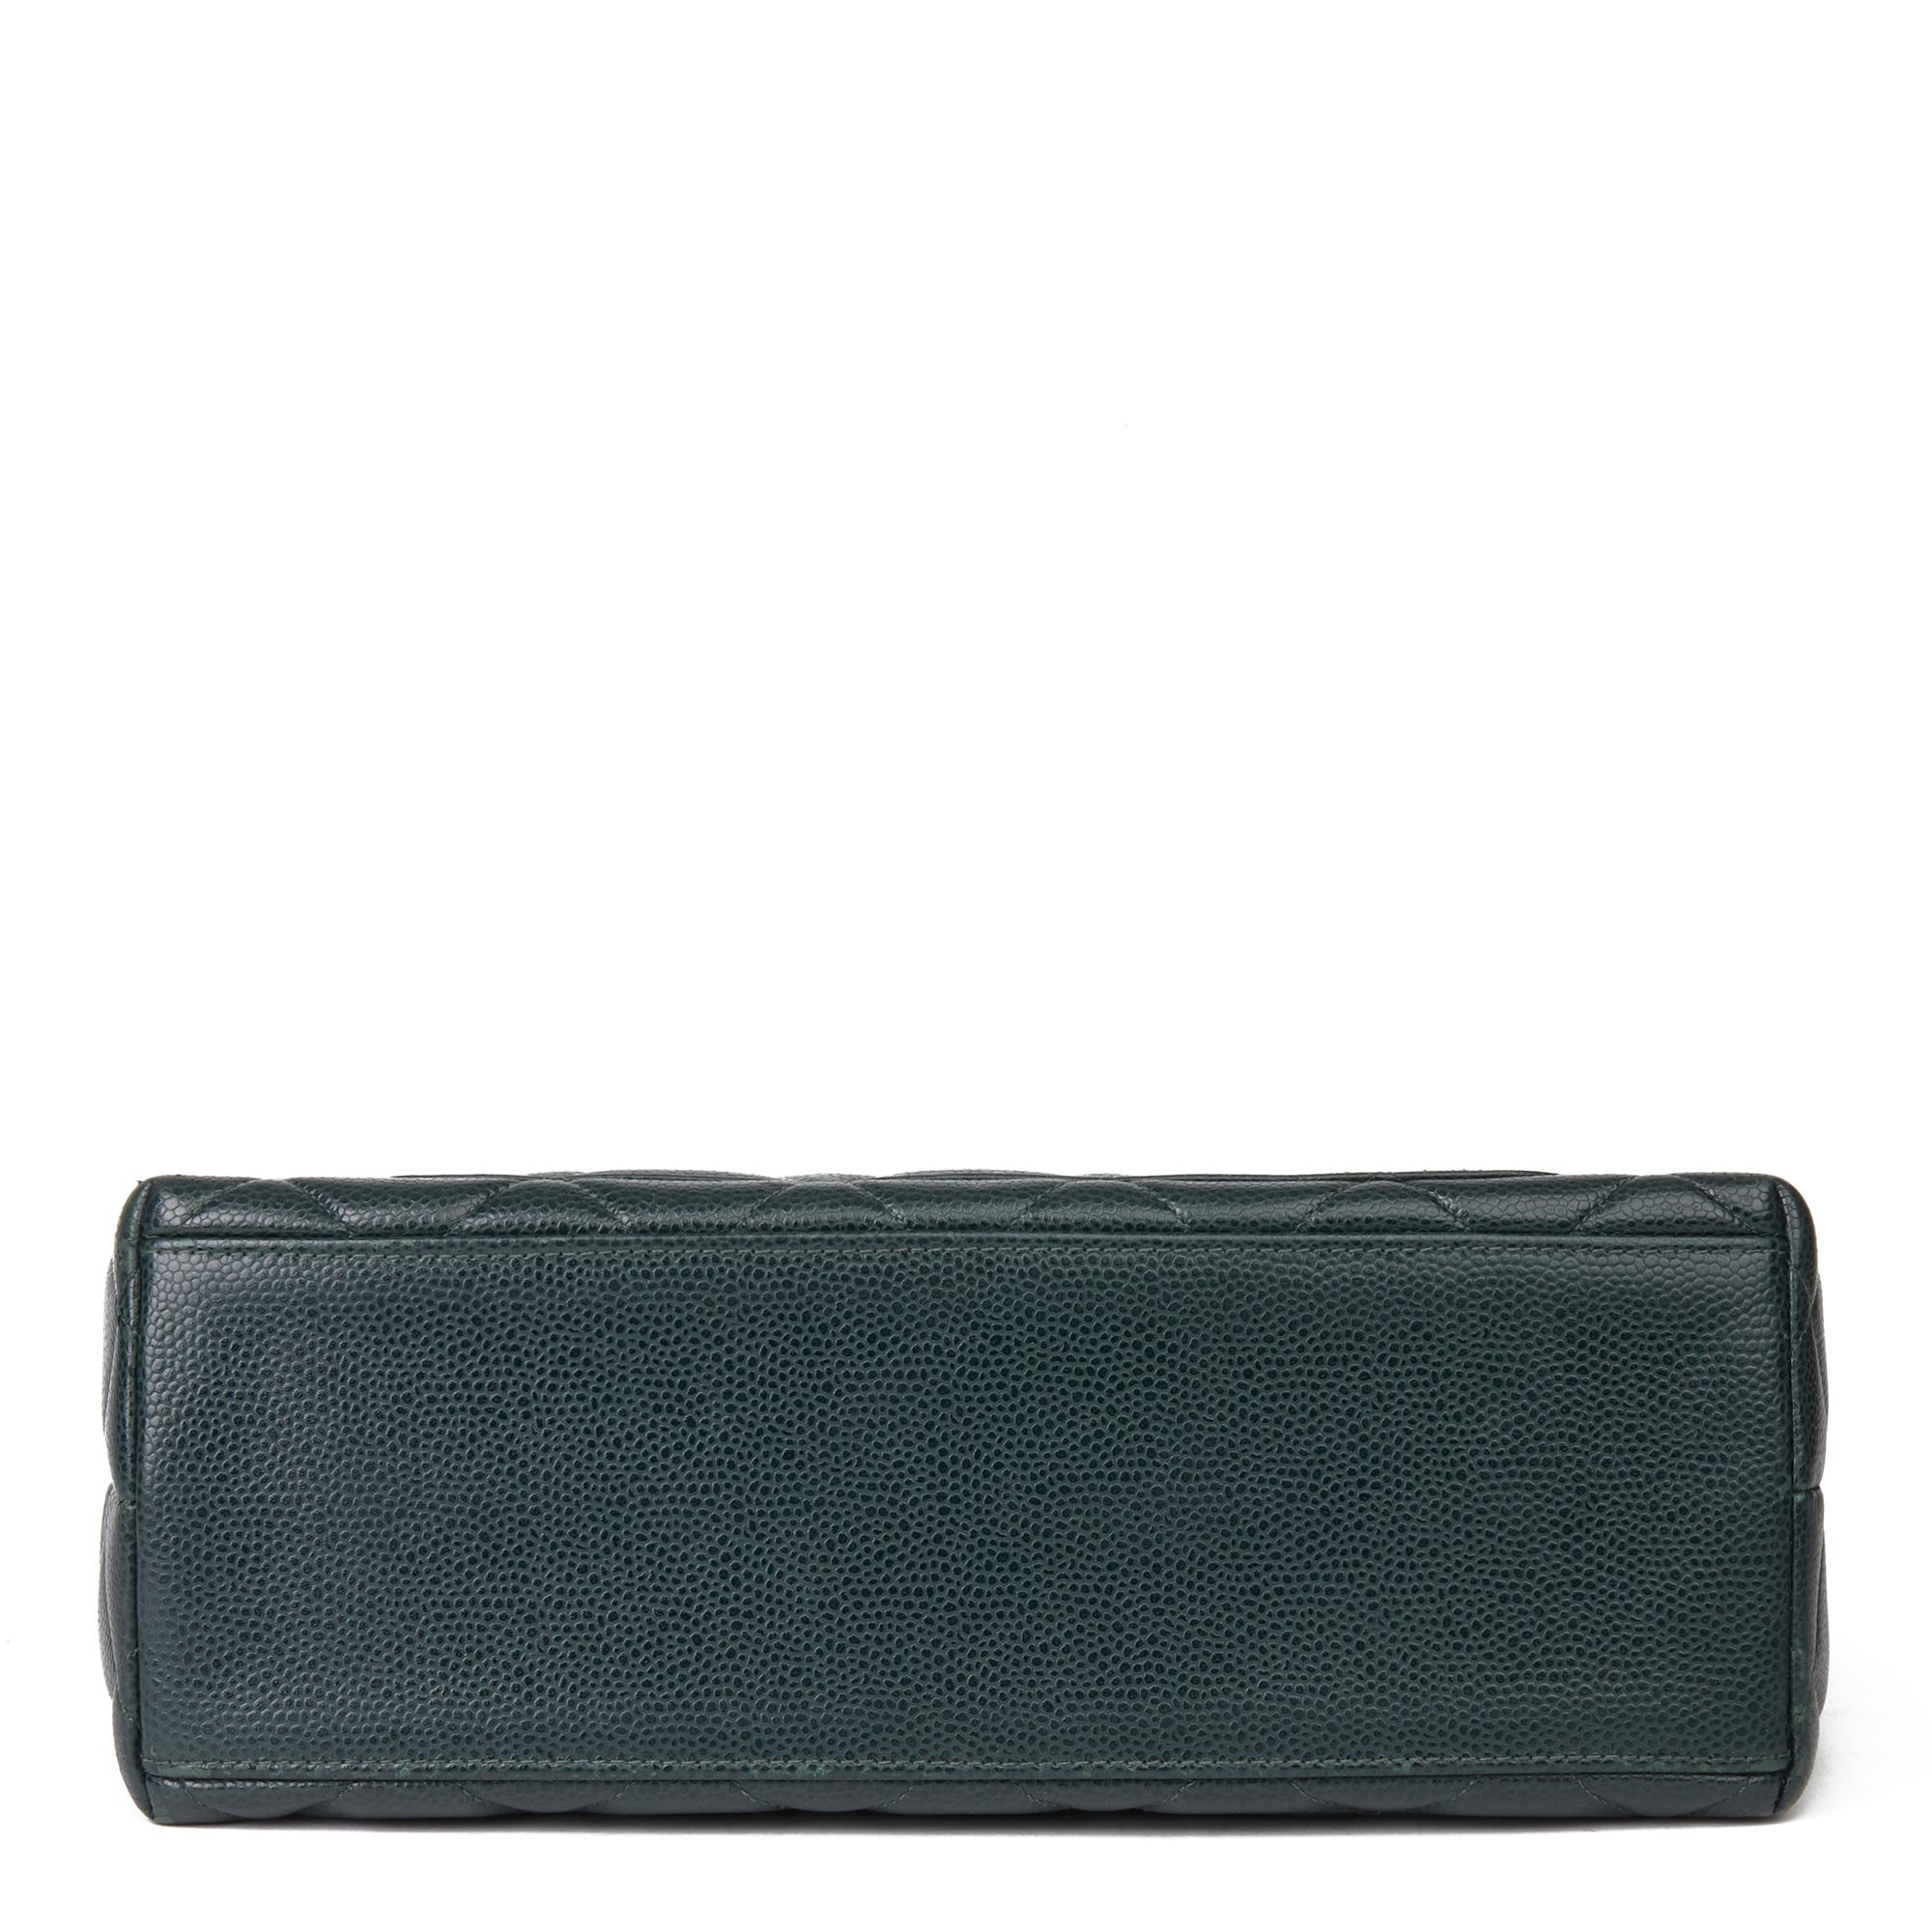 Black 1995 Chanel Forest Green Quilted Caviar Leather Vintage Timeless Shoulder Bag 